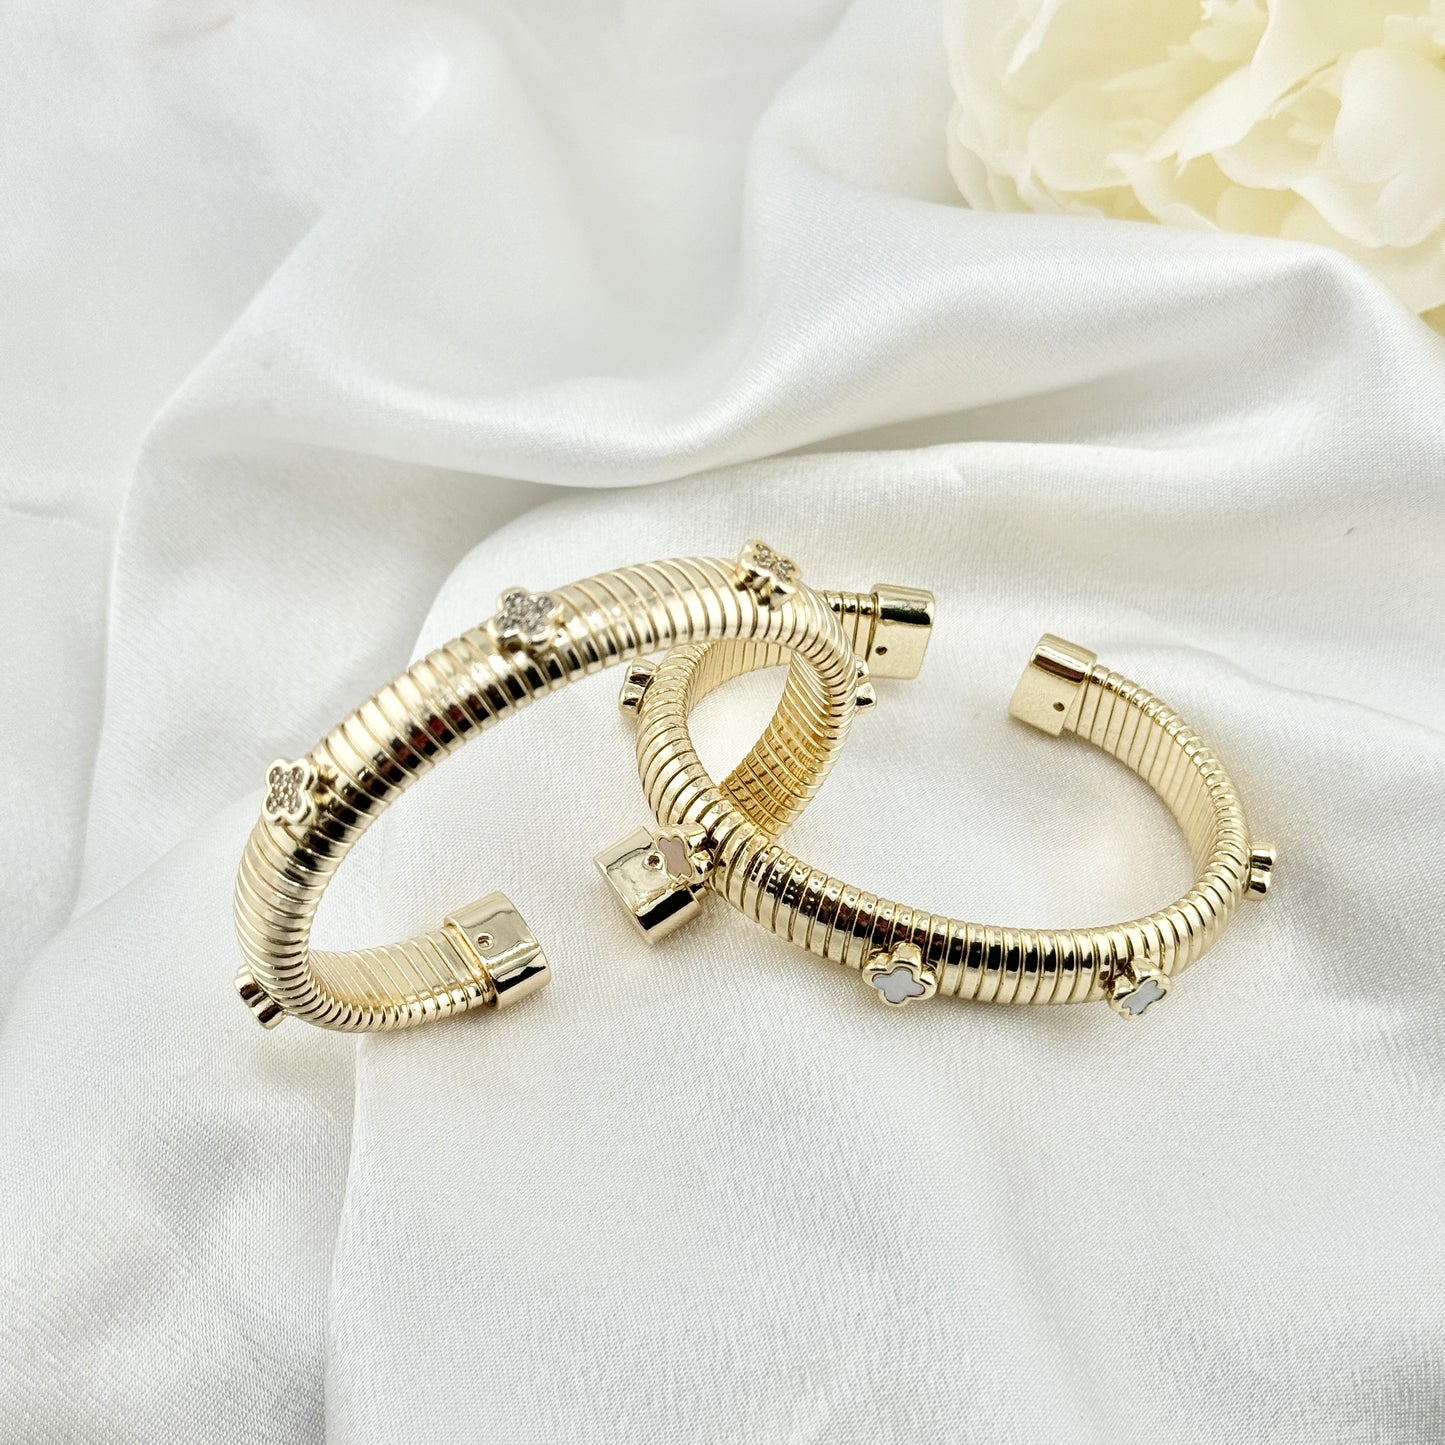 Bella gold bracelet